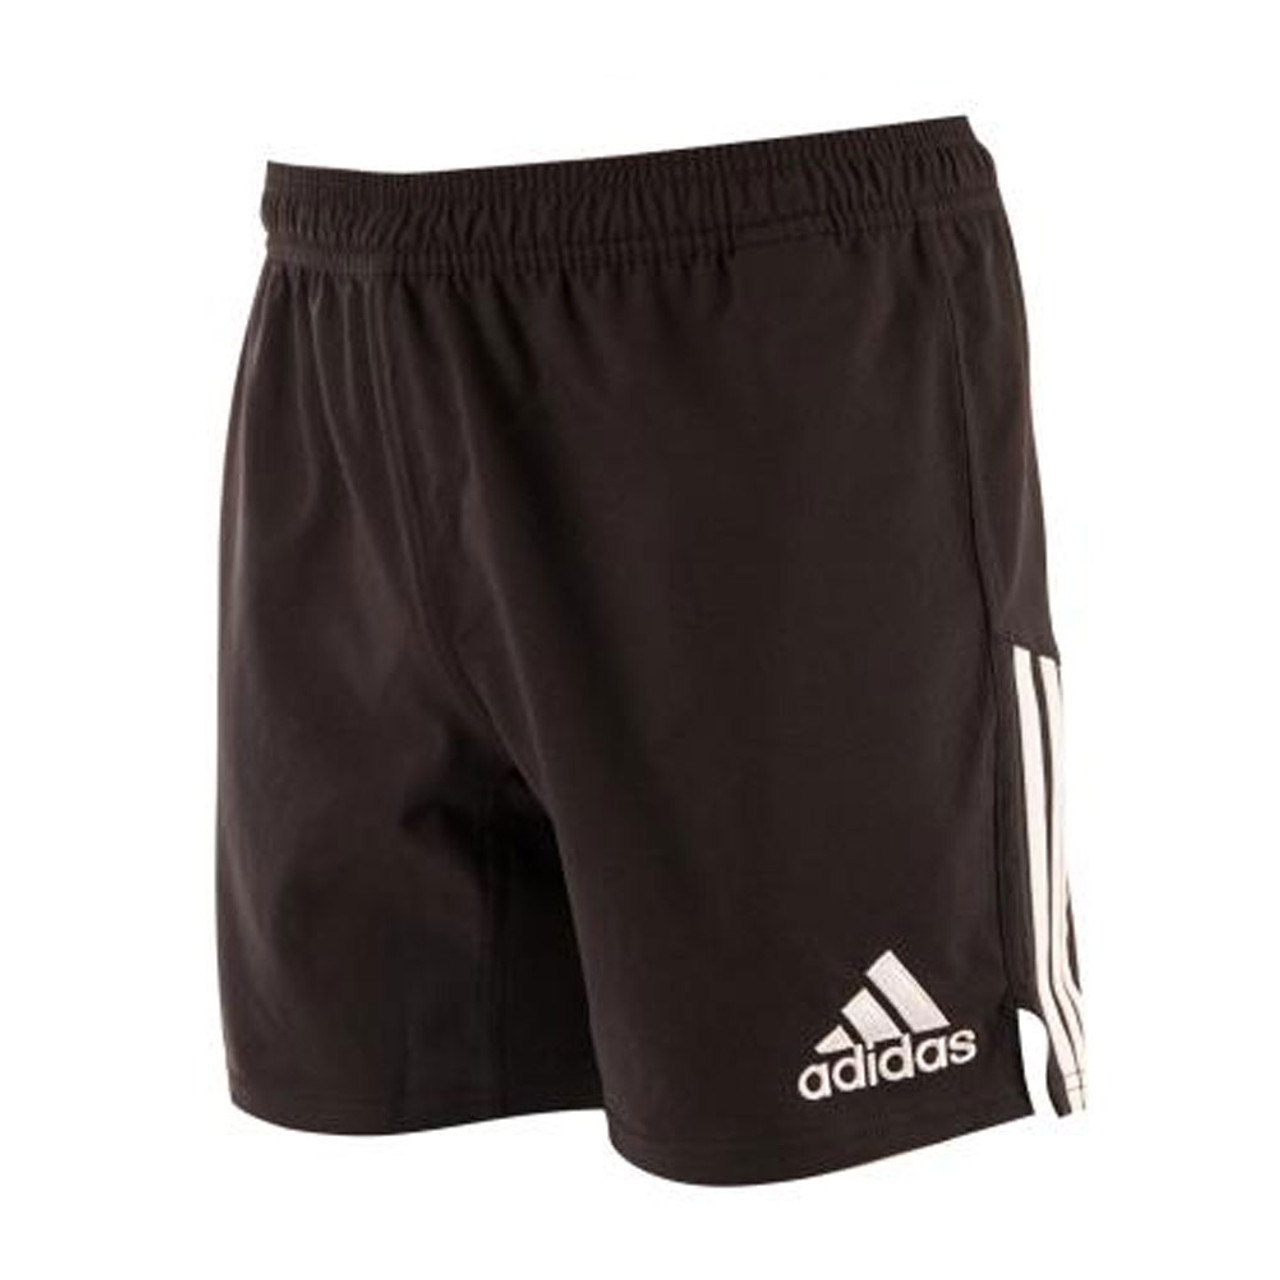 ADIDAS 3 stripe rugby shorts [black]